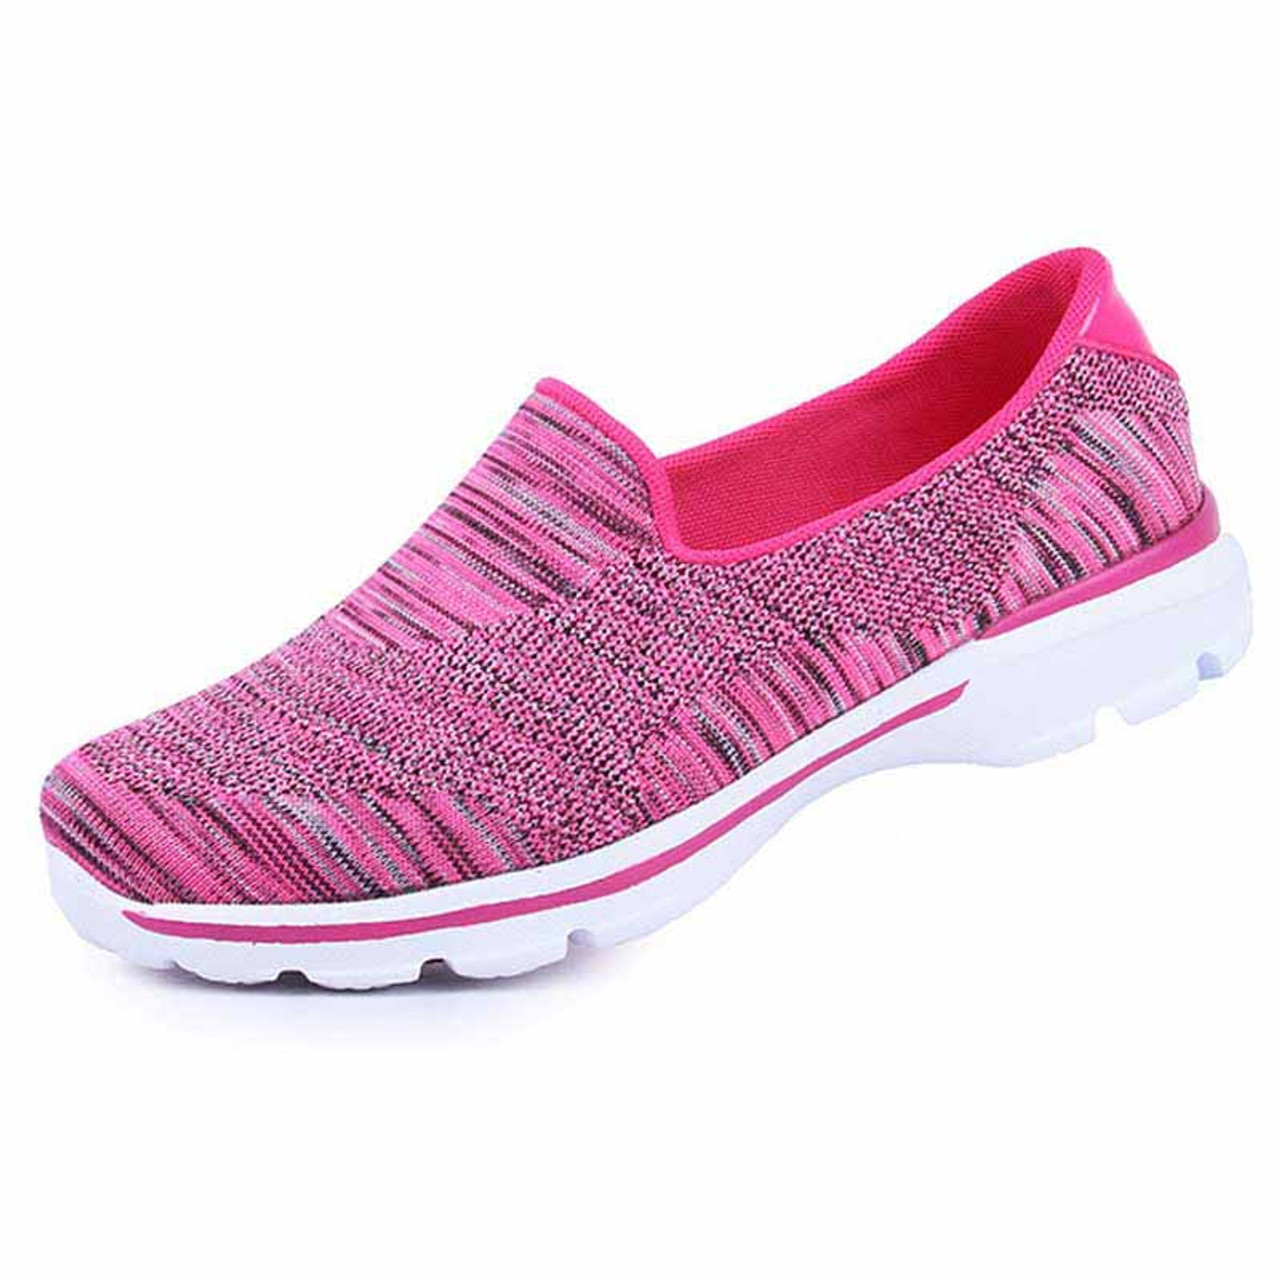 Red stripe pattern flyknit slip on shoe sneaker | Womens sneakers shoes ...